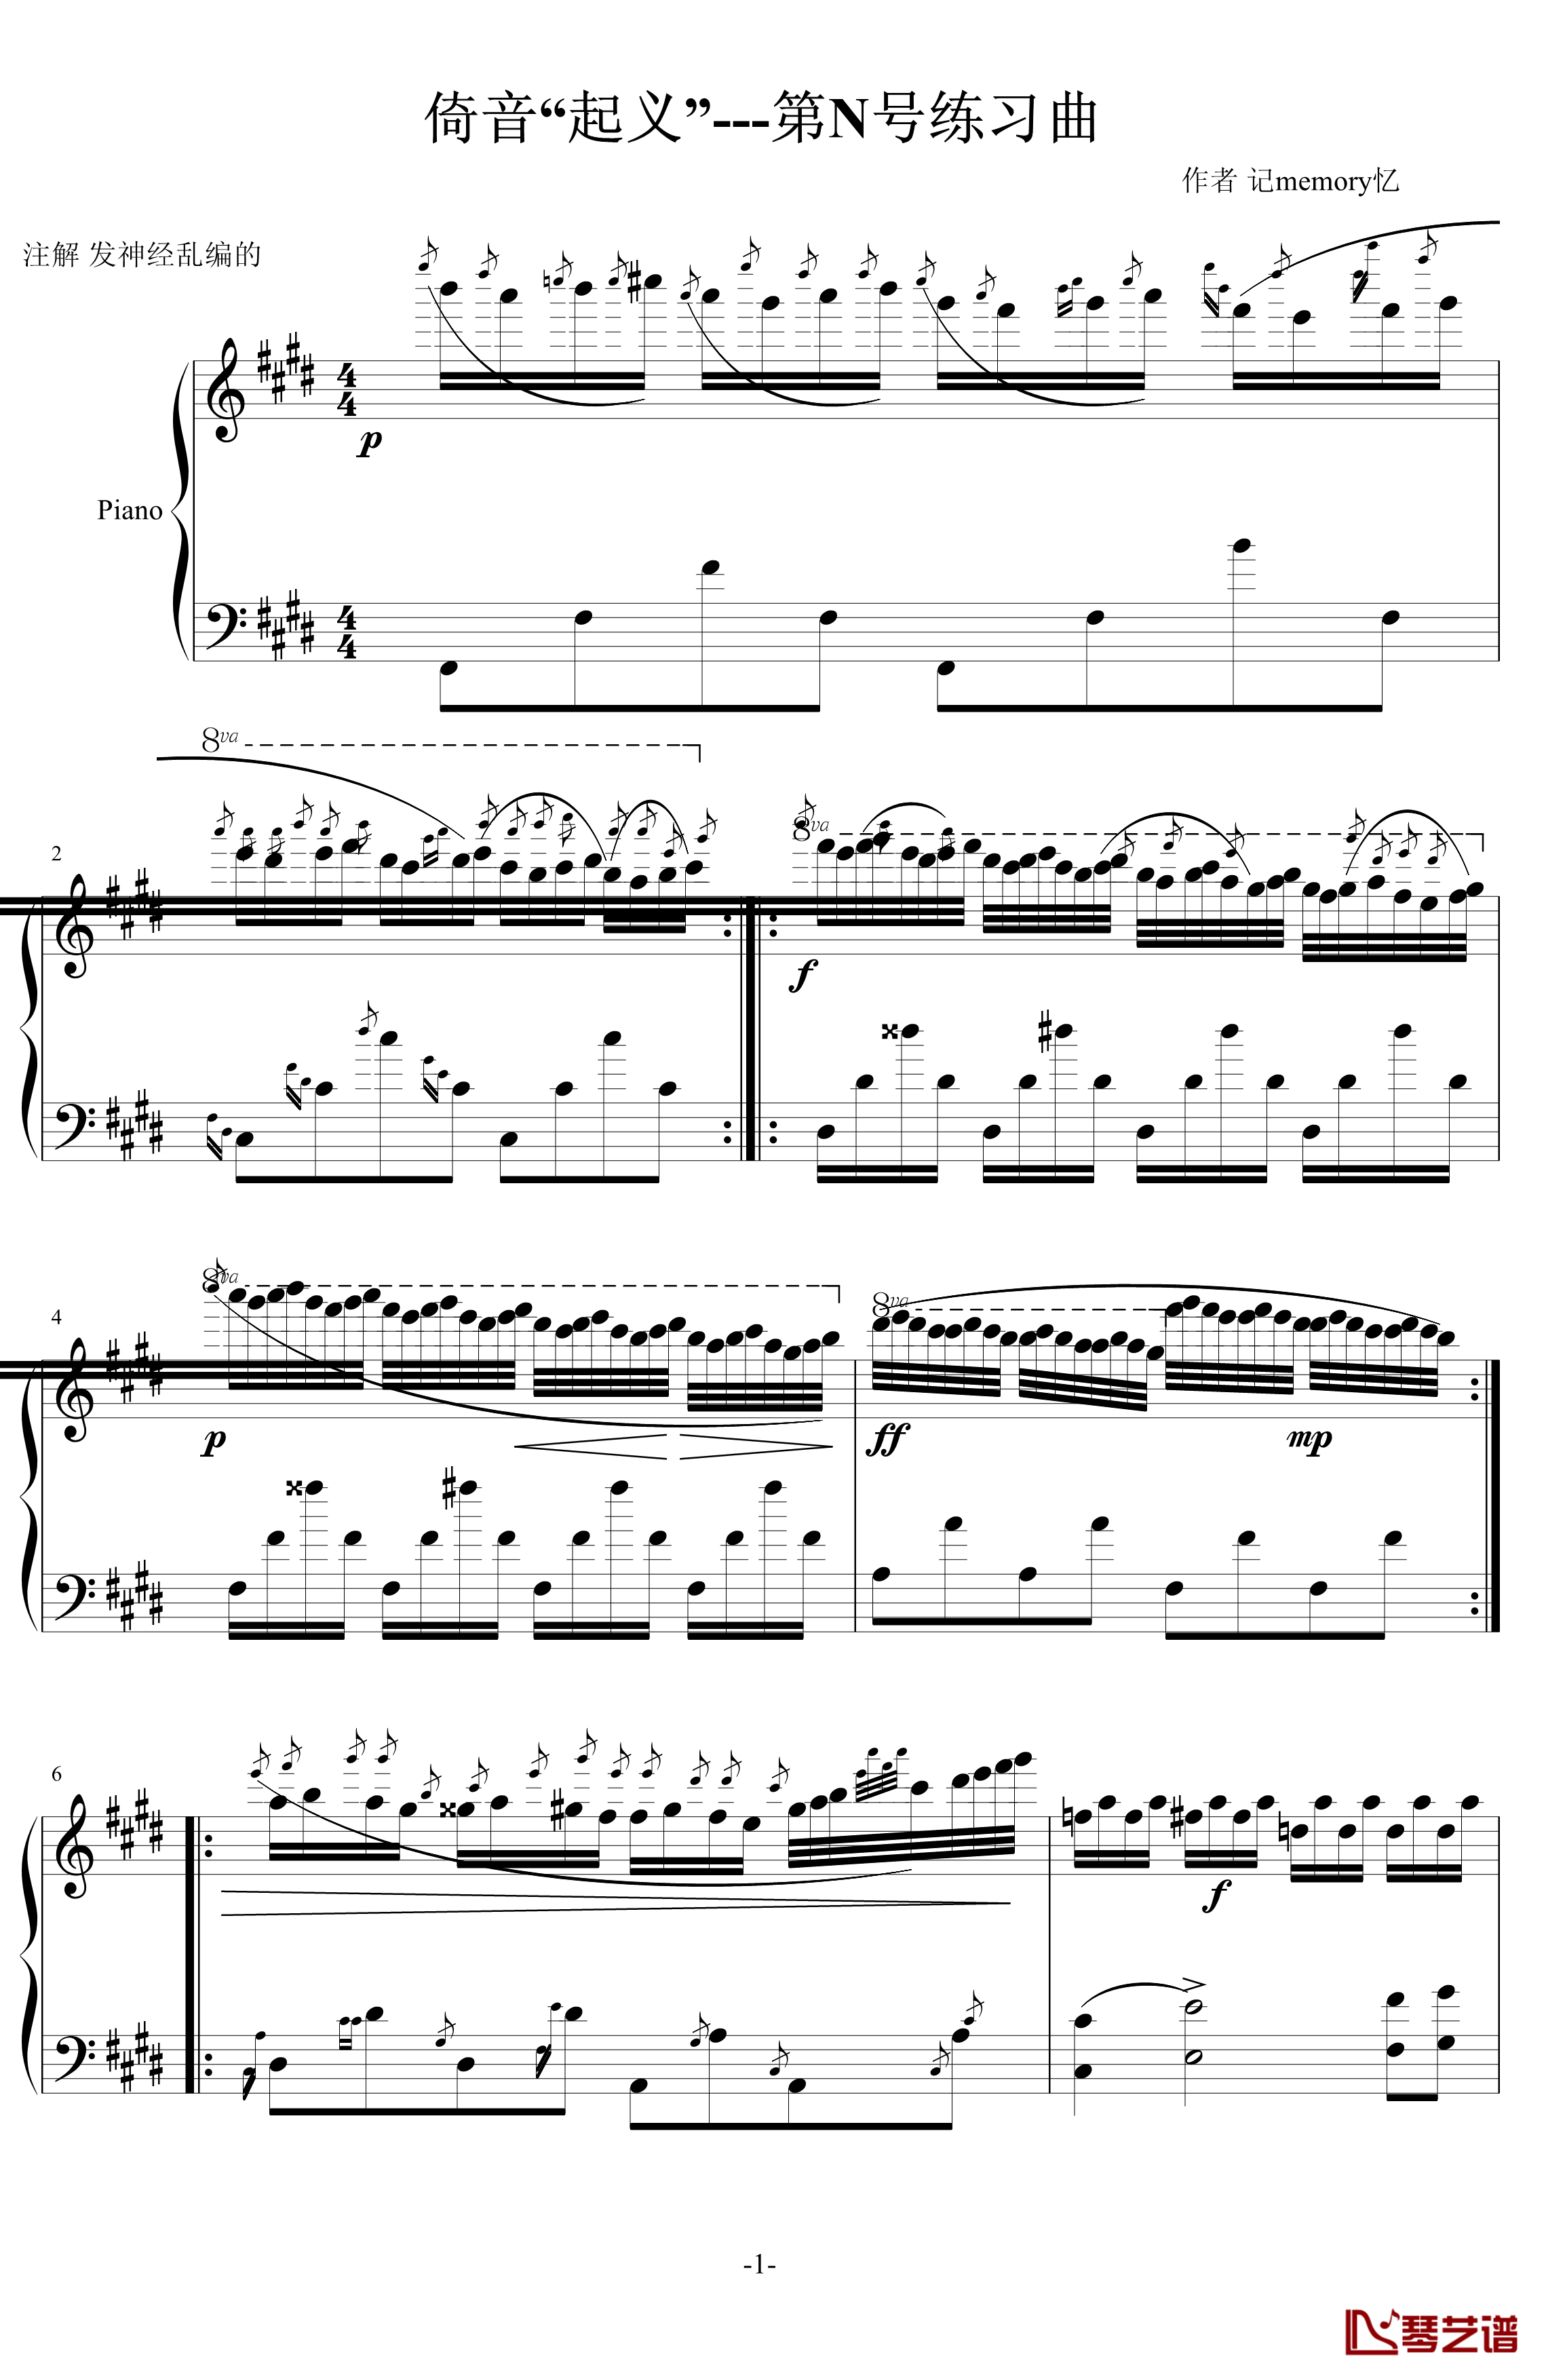 倚音“起义”钢琴谱-第N号练习曲-记memory忆1